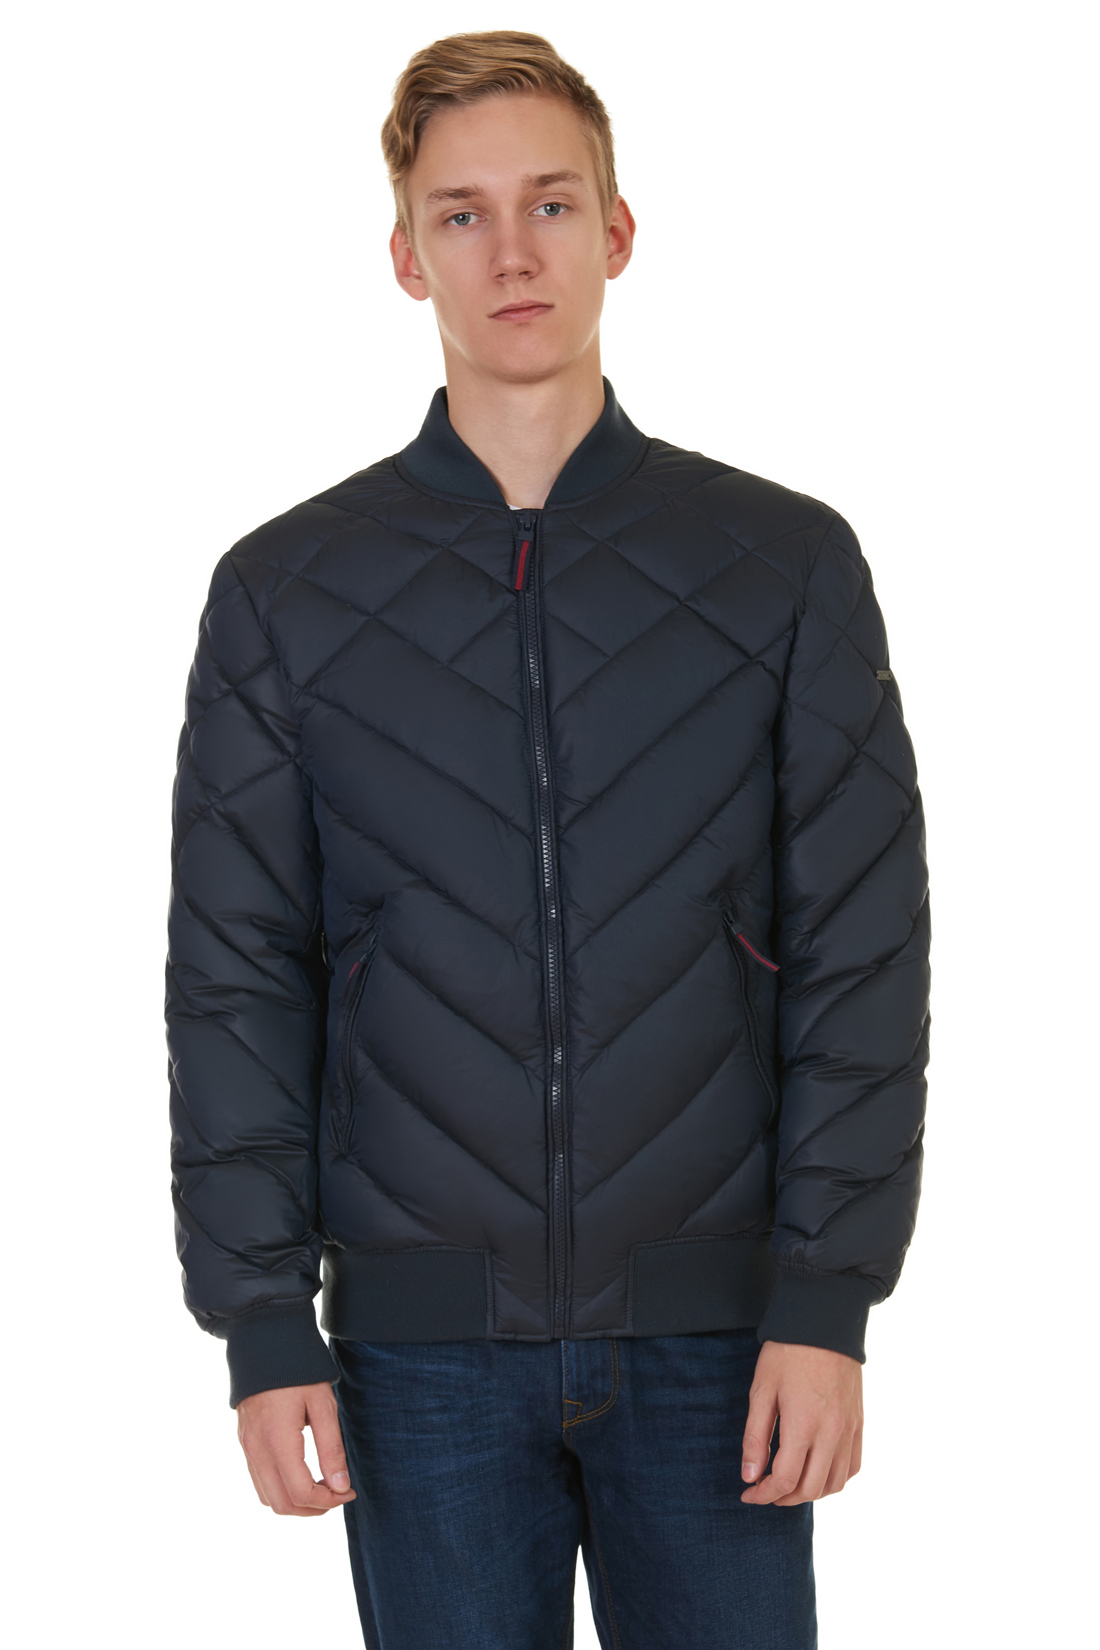 Дутая куртка-бомбер (арт. baon B537552), размер L, цвет синий Дутая куртка-бомбер (арт. baon B537552) - фото 1